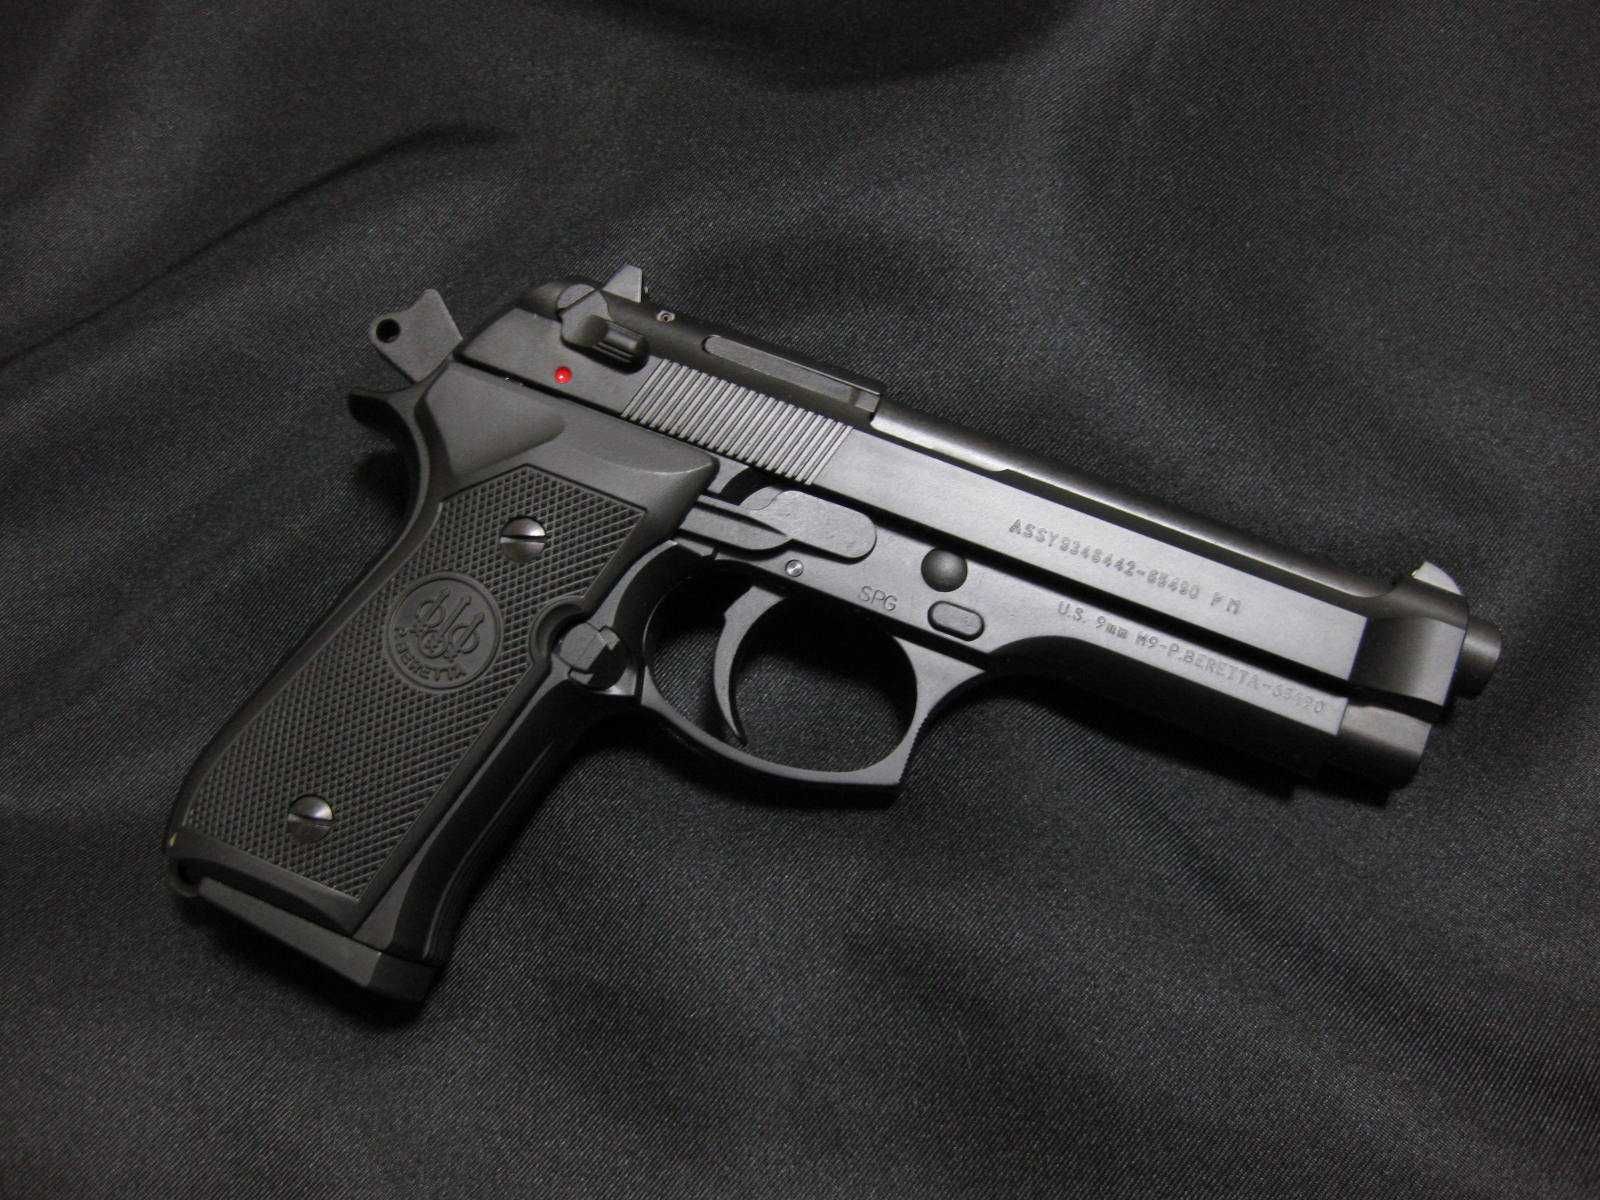 Pistol Airsoft Gen Colt 1911/Taurus pt92 Propulsie Co2# 3,8J #